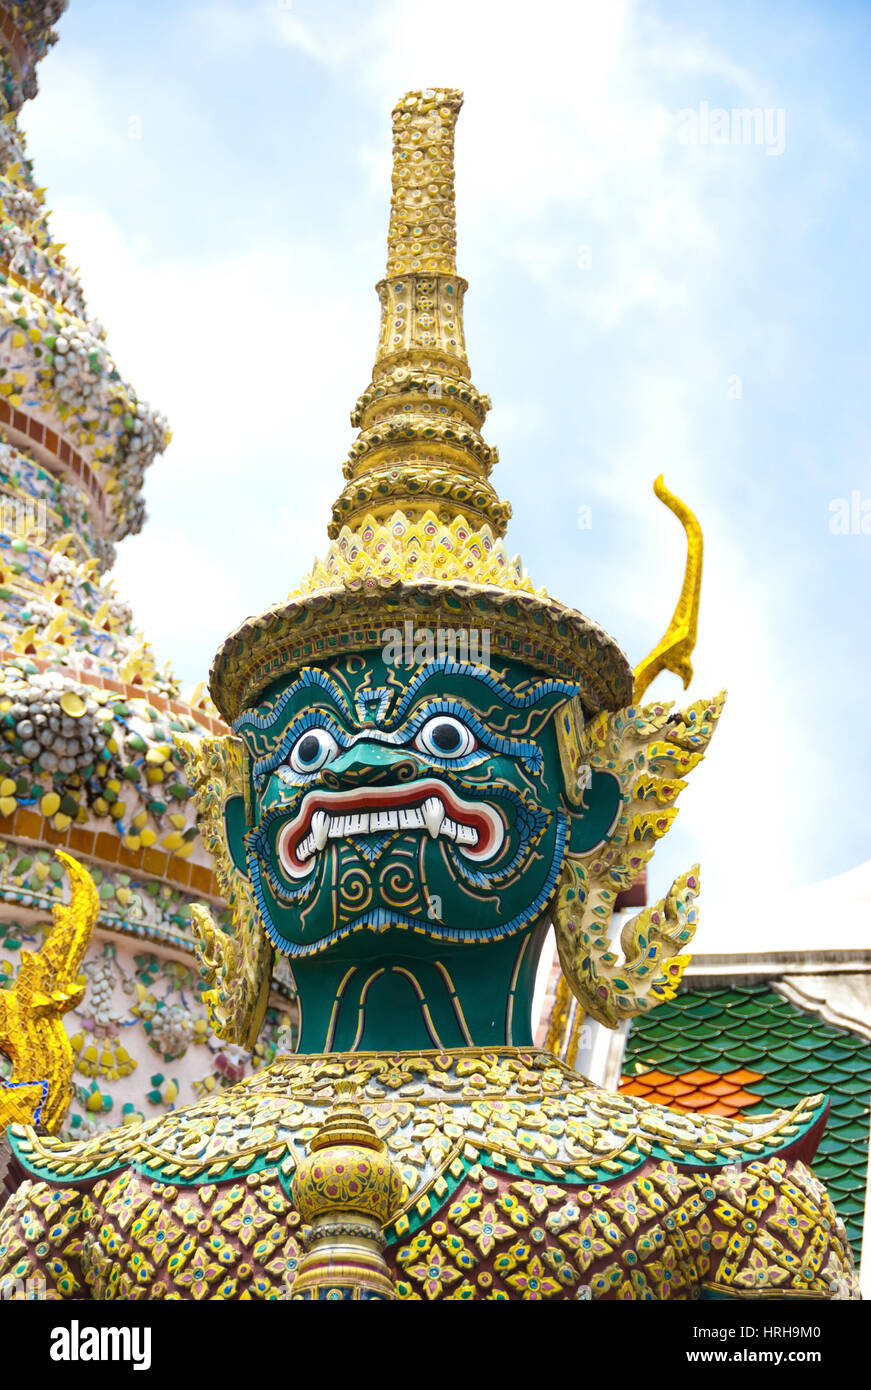 Buddhistische Tempelanlage, Wat Phra Kaeo, Bangkok, Thailand - Wat Phra Kaeo, Bangkok, Thailand Stock Photo